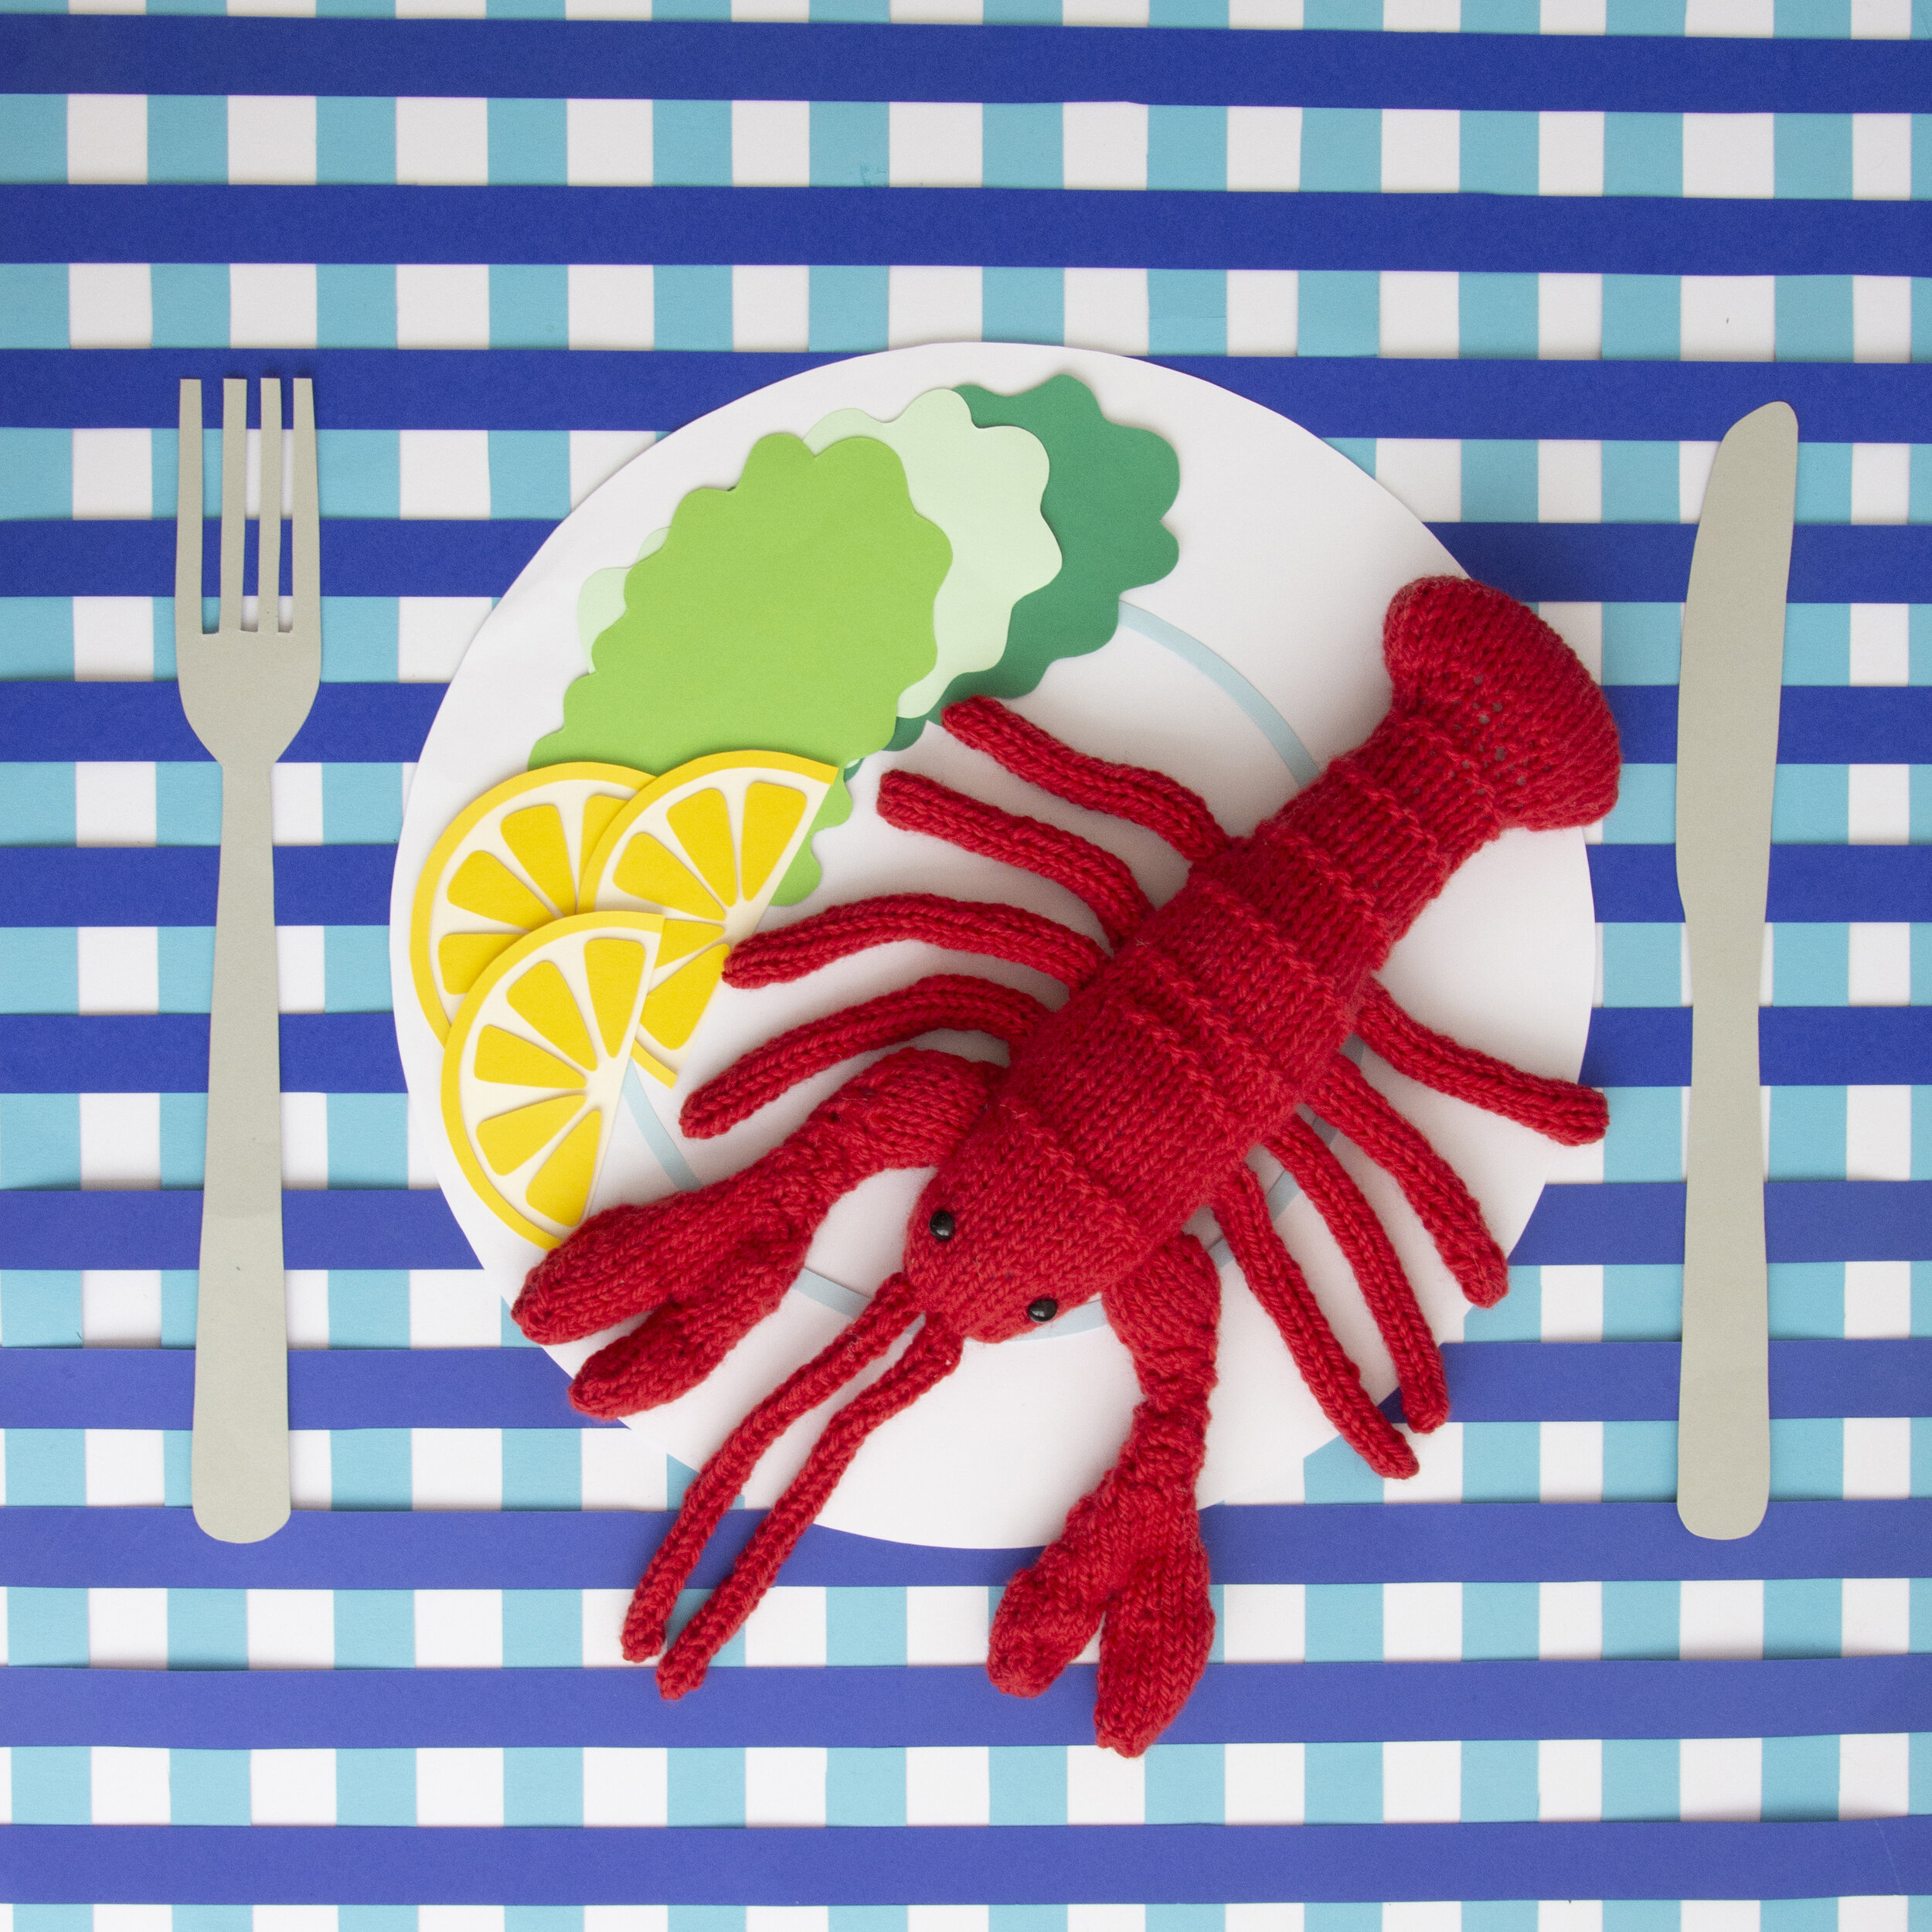 Lobster dinner.jpg